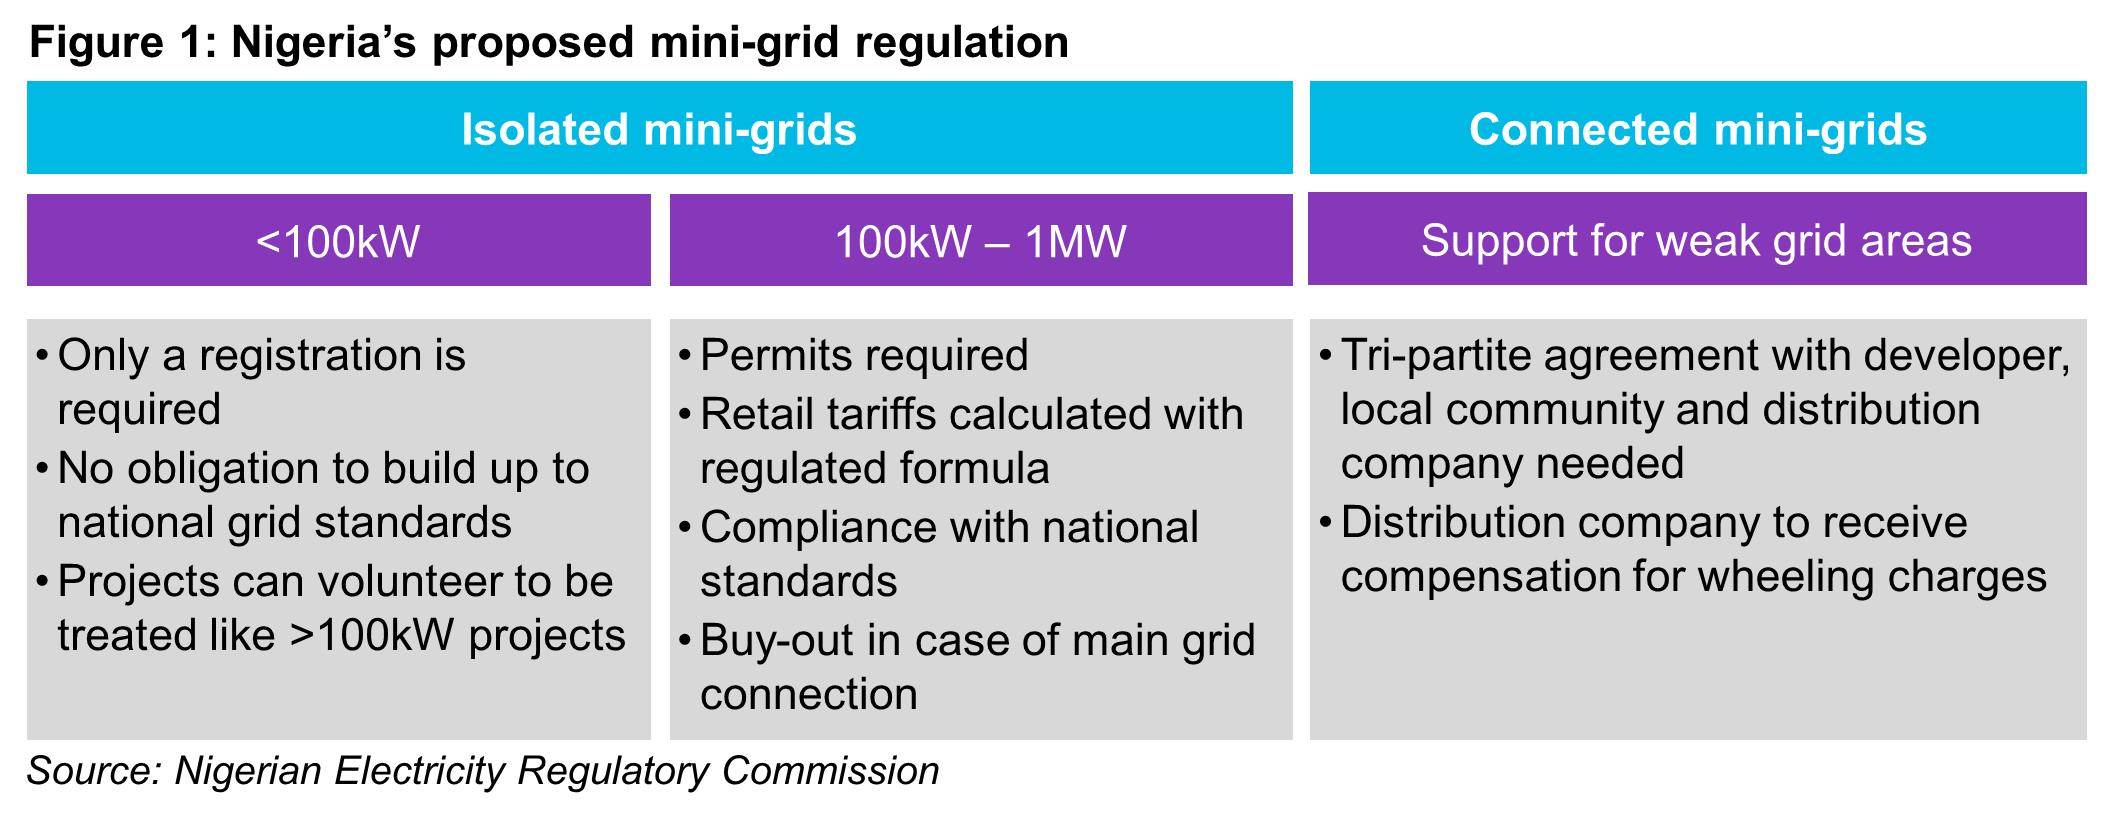 OG - Fig1 - Nigeria proposed mini-grid regulation